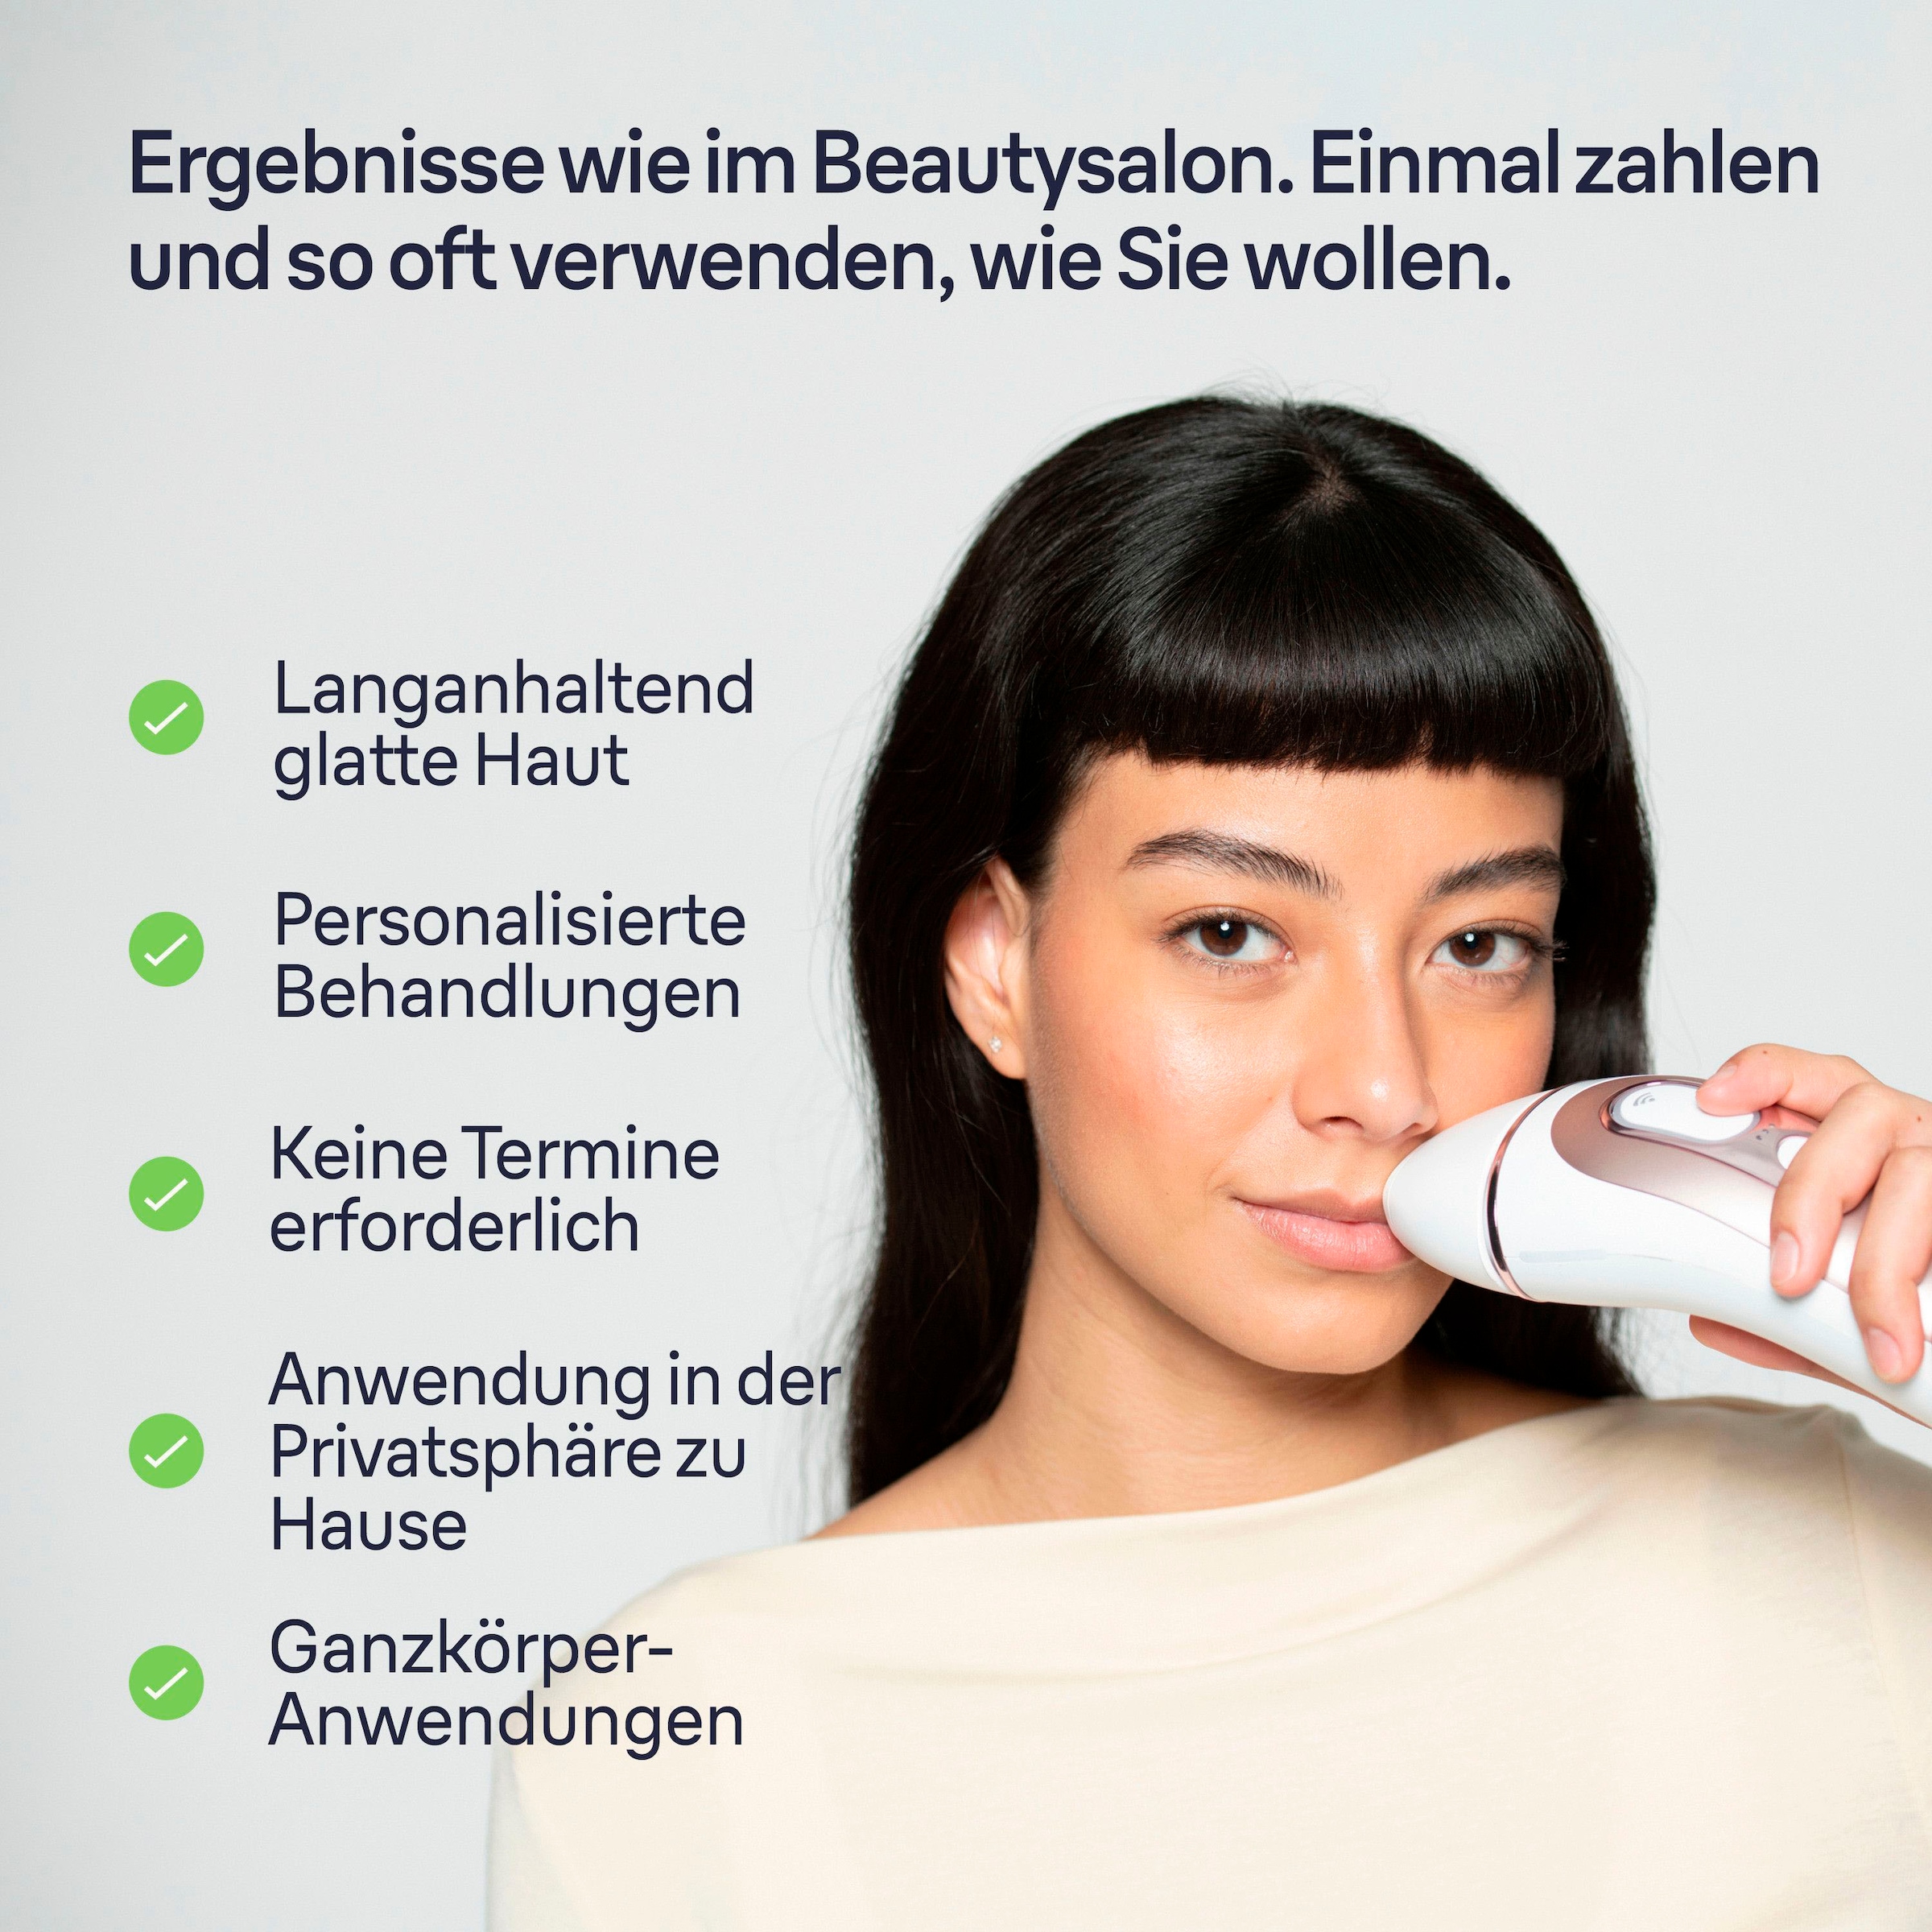 Braun IPL-Haarentferner »Smart Skin i·expert PL7387«, 4 Aufsätze für Gesicht & Körper, Venus Rasierer & Aufbewahrungsbox